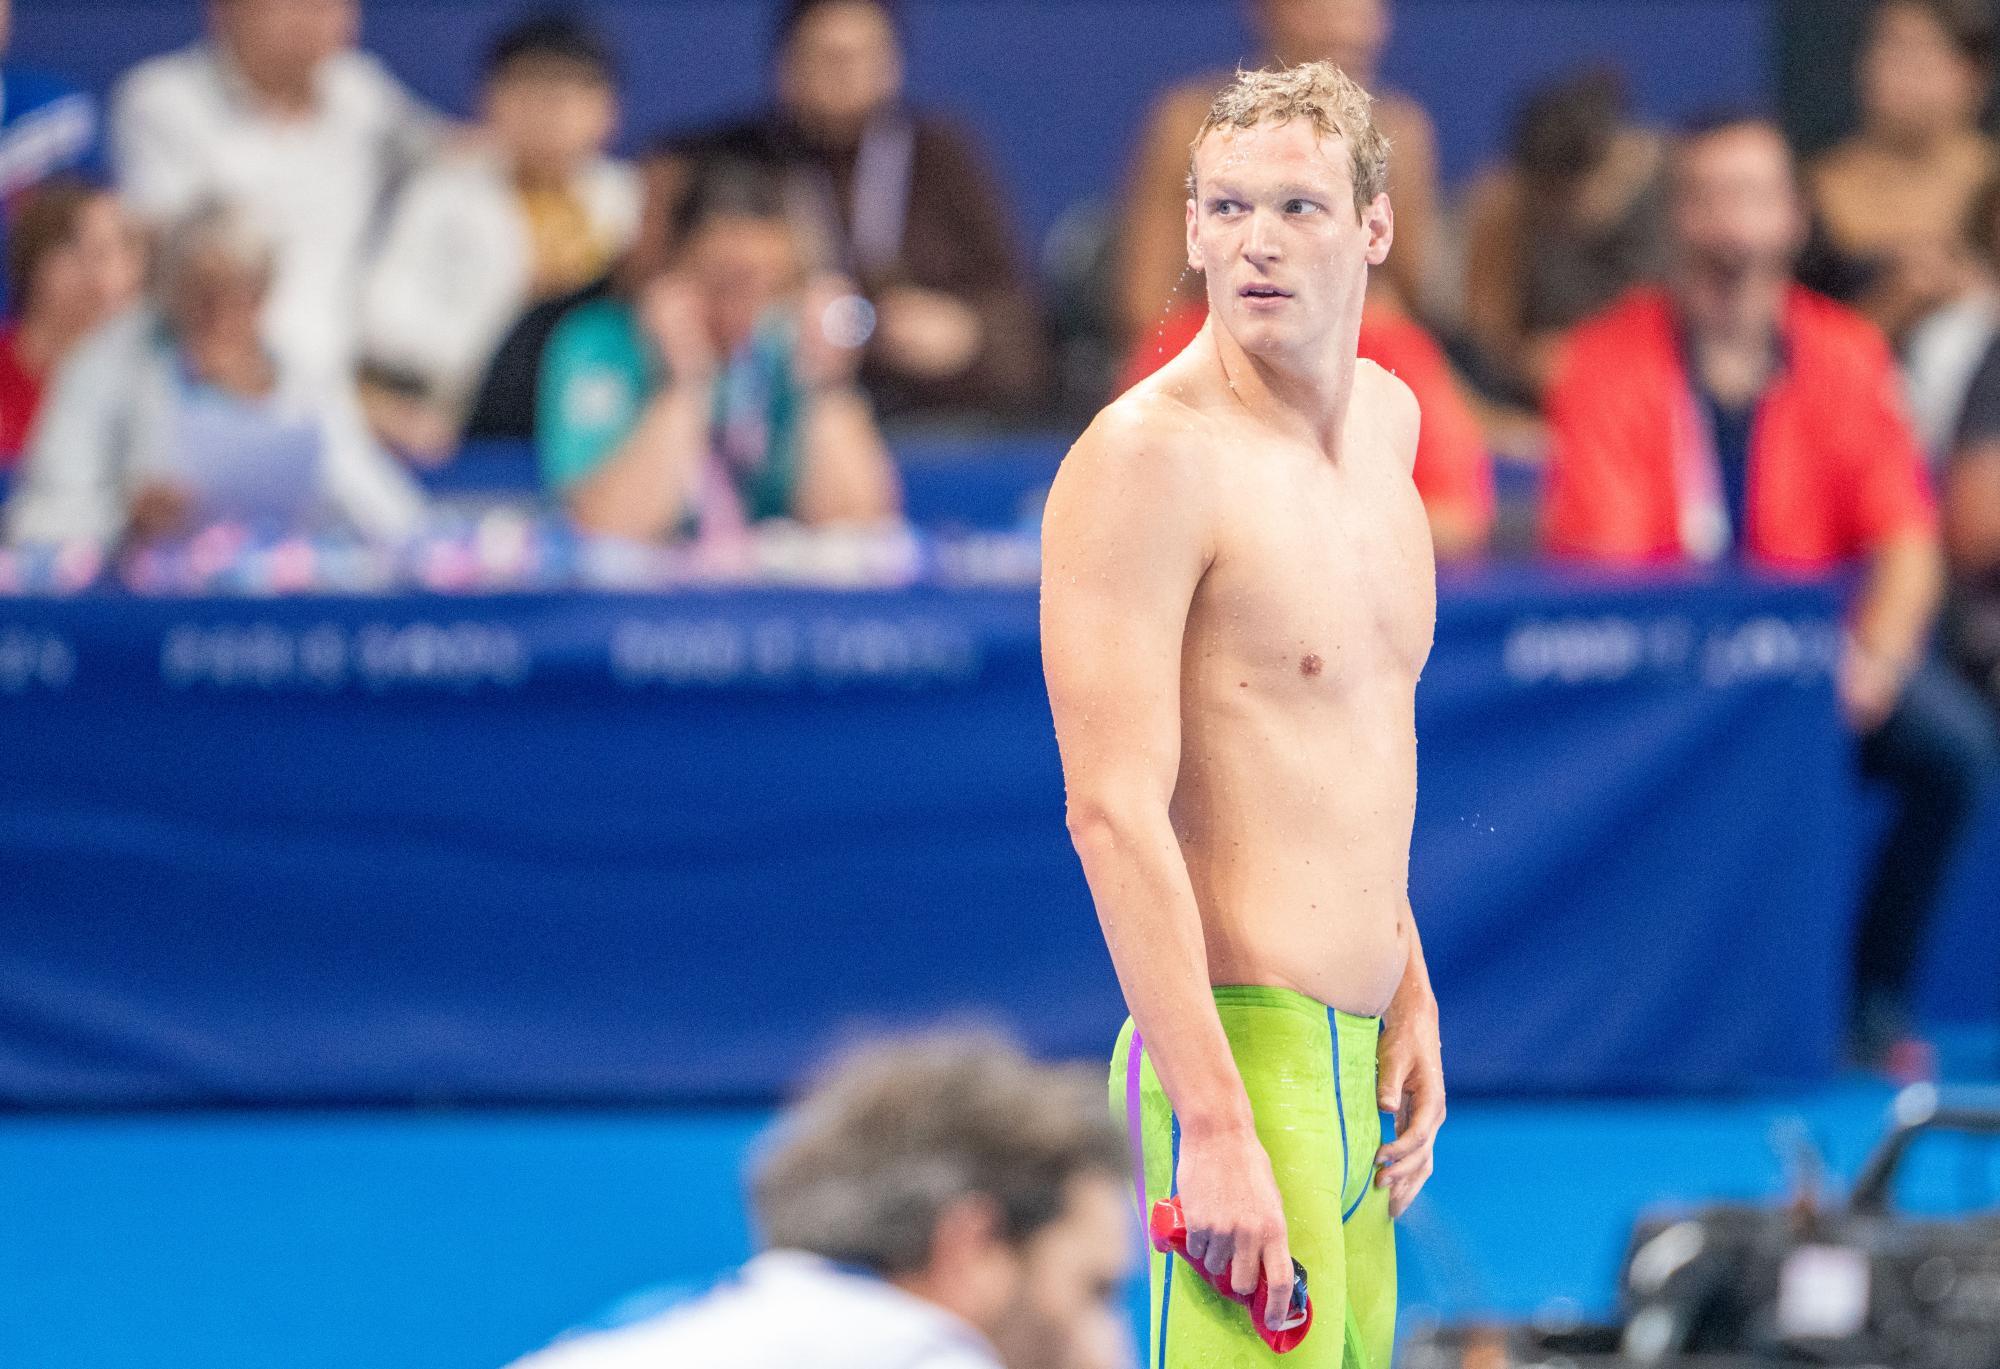 Krank! Schwimm-Star Auböck verzichtet auf Start über 200 m Kraul bei Olympia